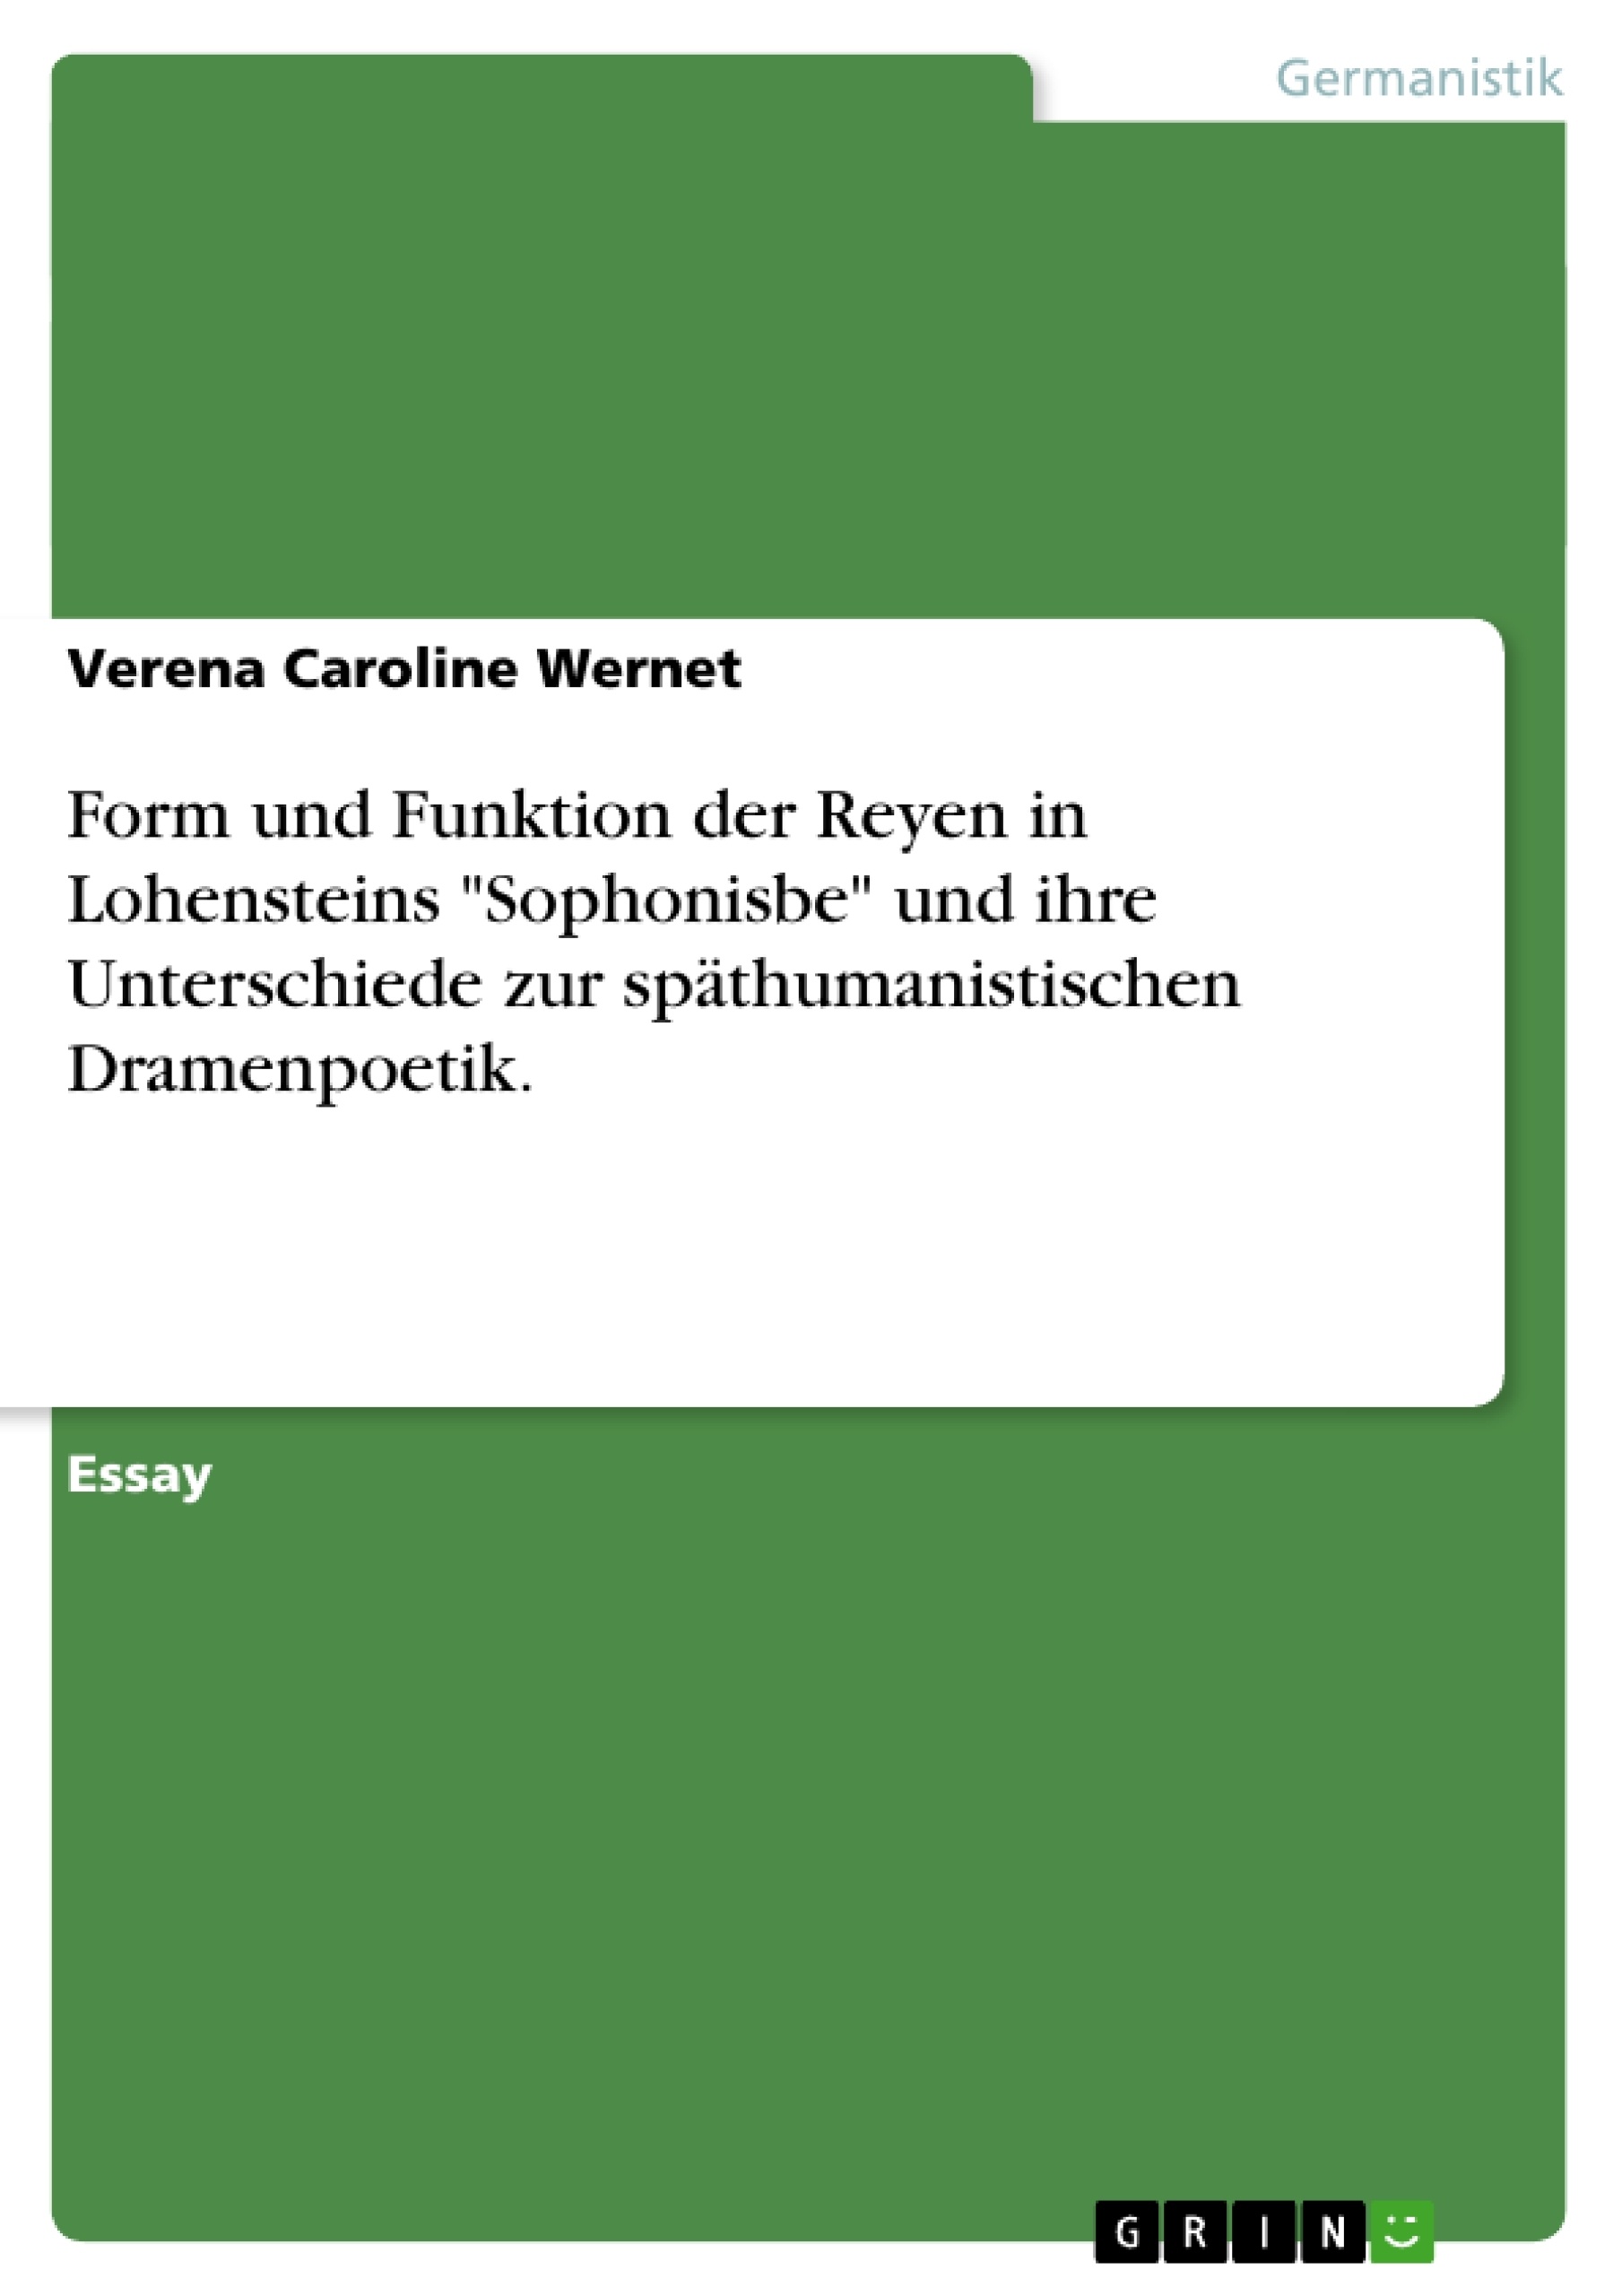 Title: Form und Funktion der Reyen in Lohensteins "Sophonisbe" und ihre Unterschiede zur späthumanistischen Dramenpoetik.